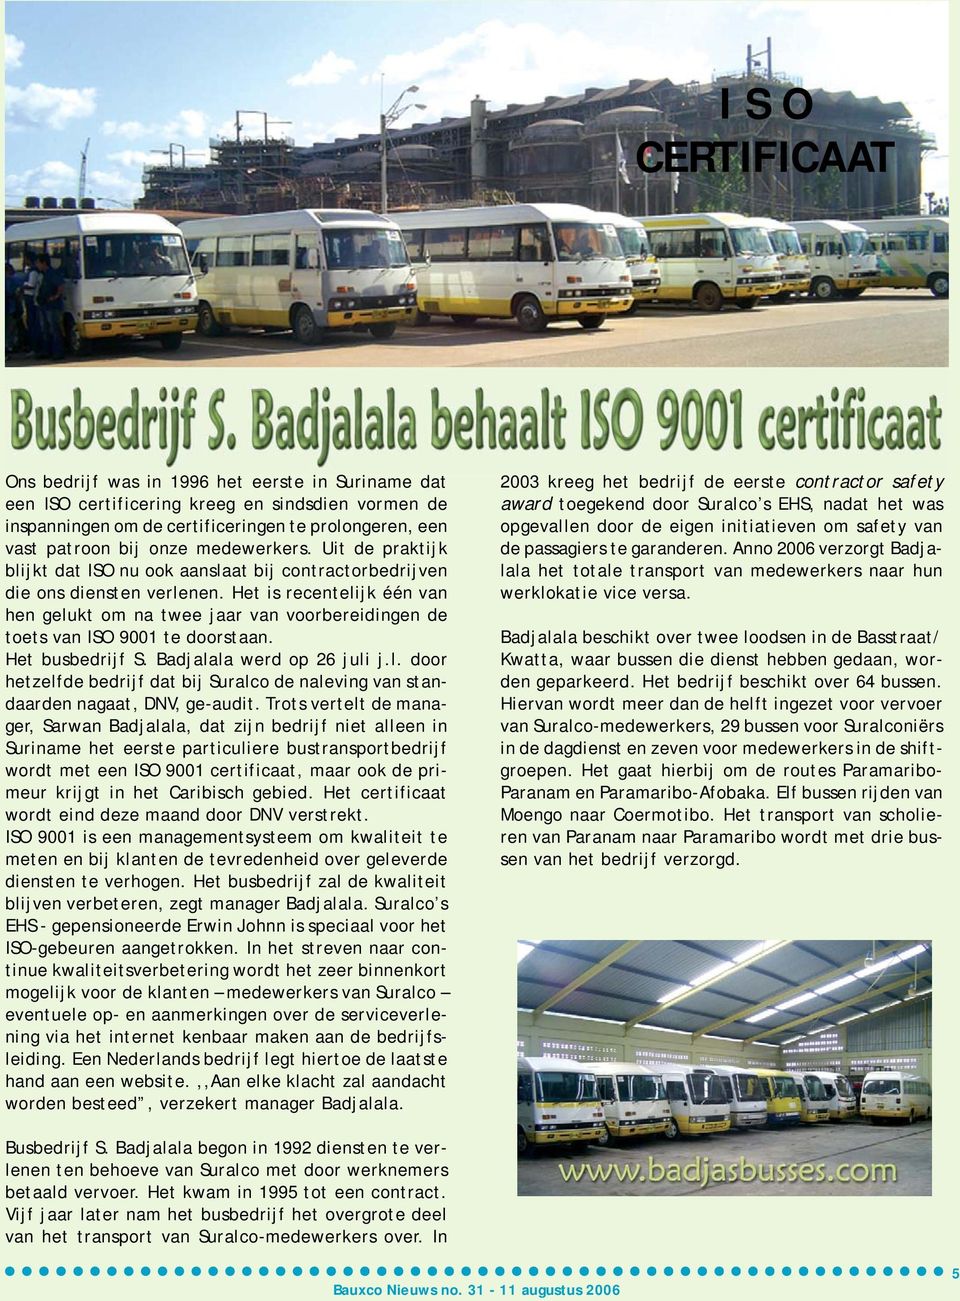 Het is recentelijk één van hen gelukt om na twee jaar van voorbereidingen de toets van ISO 9001 te doorstaan. Het busbedrijf S. Badjalala werd op 26 juli j.l. door hetzelfde bedrijf dat bij Suralco de naleving van standaarden nagaat, DNV, ge-audit.